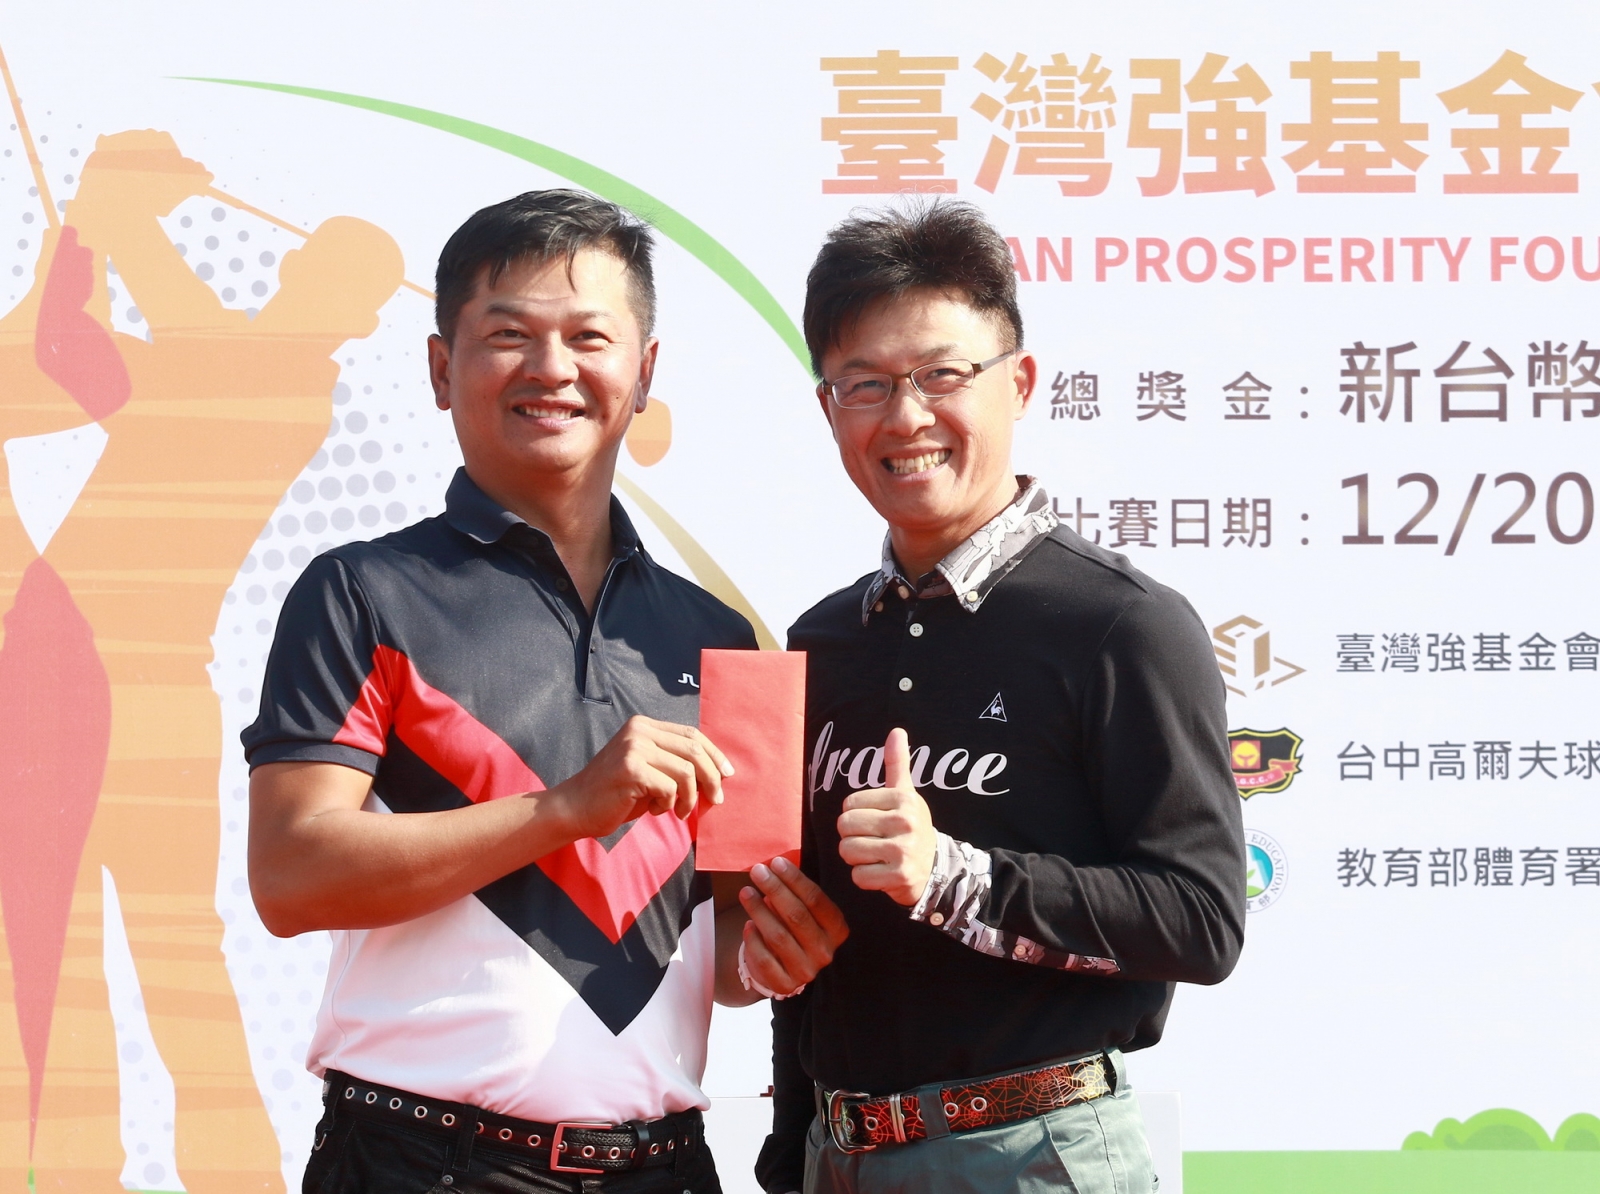 台中高爾夫球場賴俊安協理(右)頒破球場紀錄獎金二萬元給林文堂(鍾豐榮攝影)